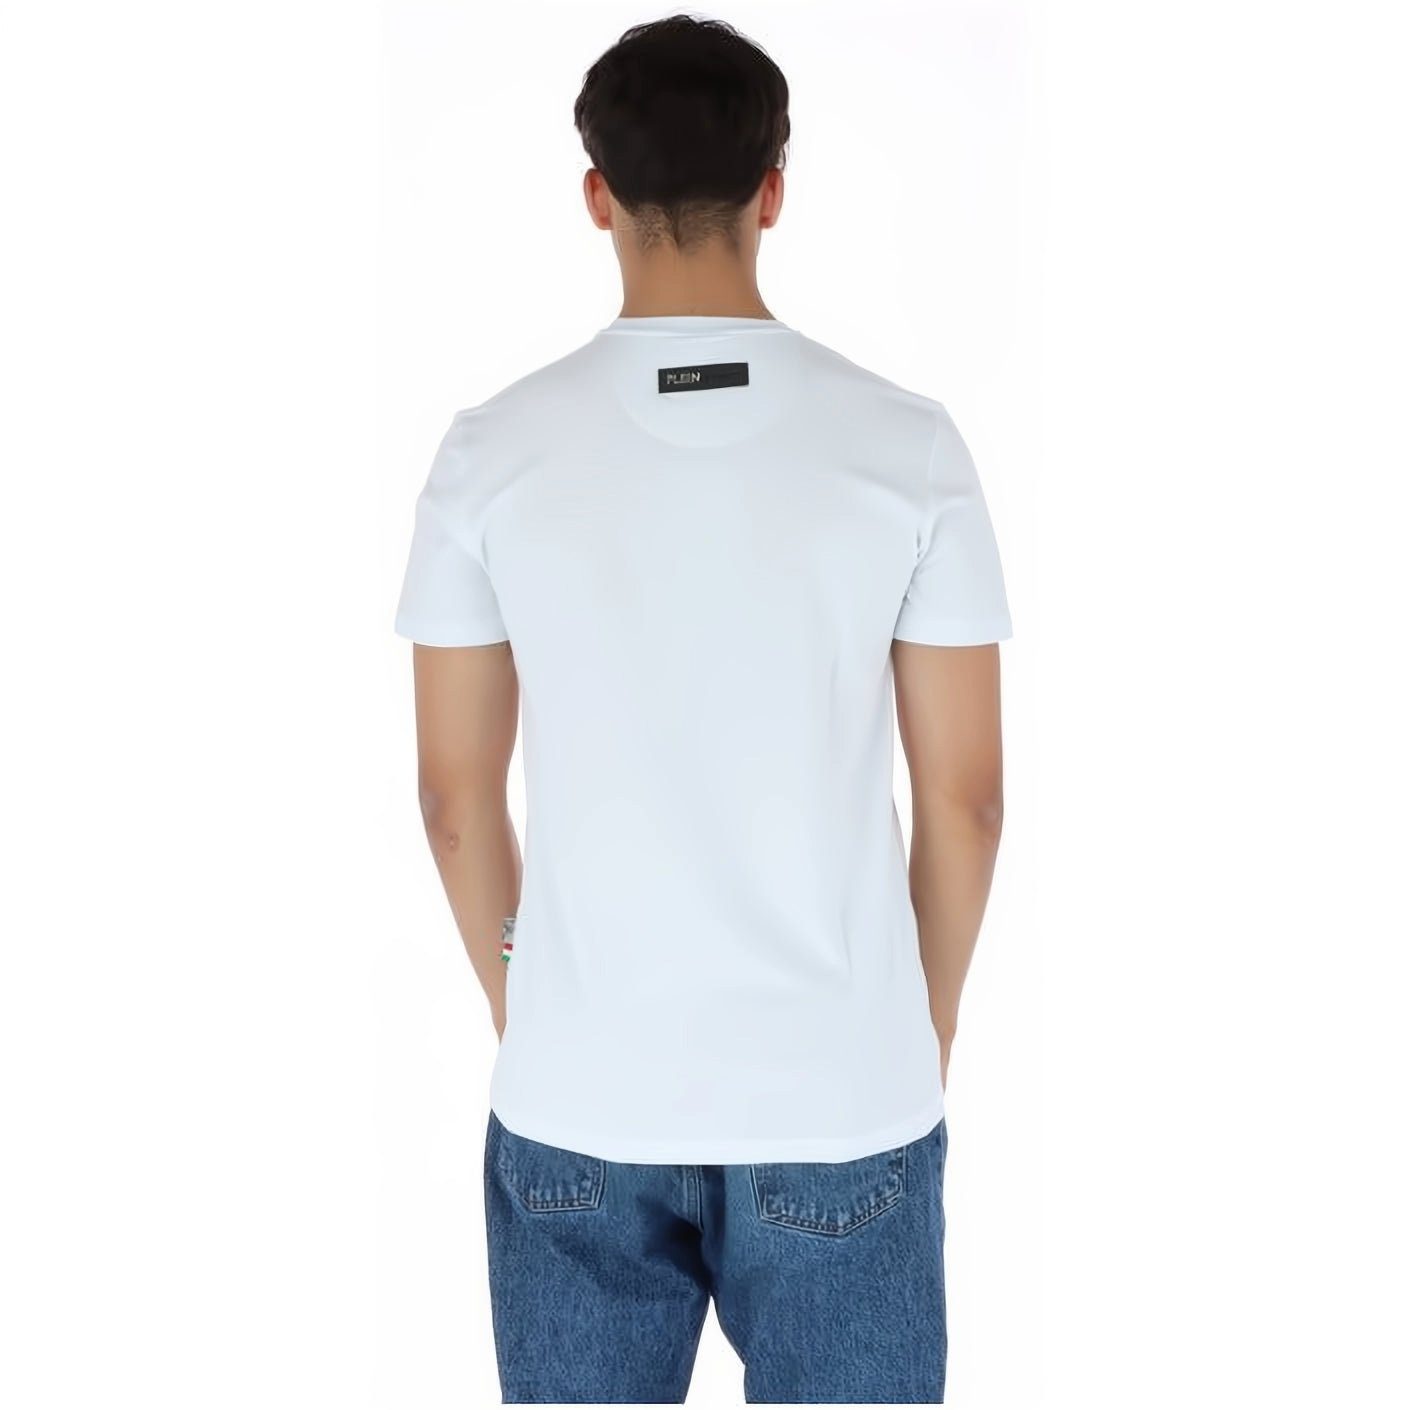 Tragekomfort, vielfältige SPORT ROUND PLEIN Farbauswahl T-Shirt Look, Stylischer hoher NECK